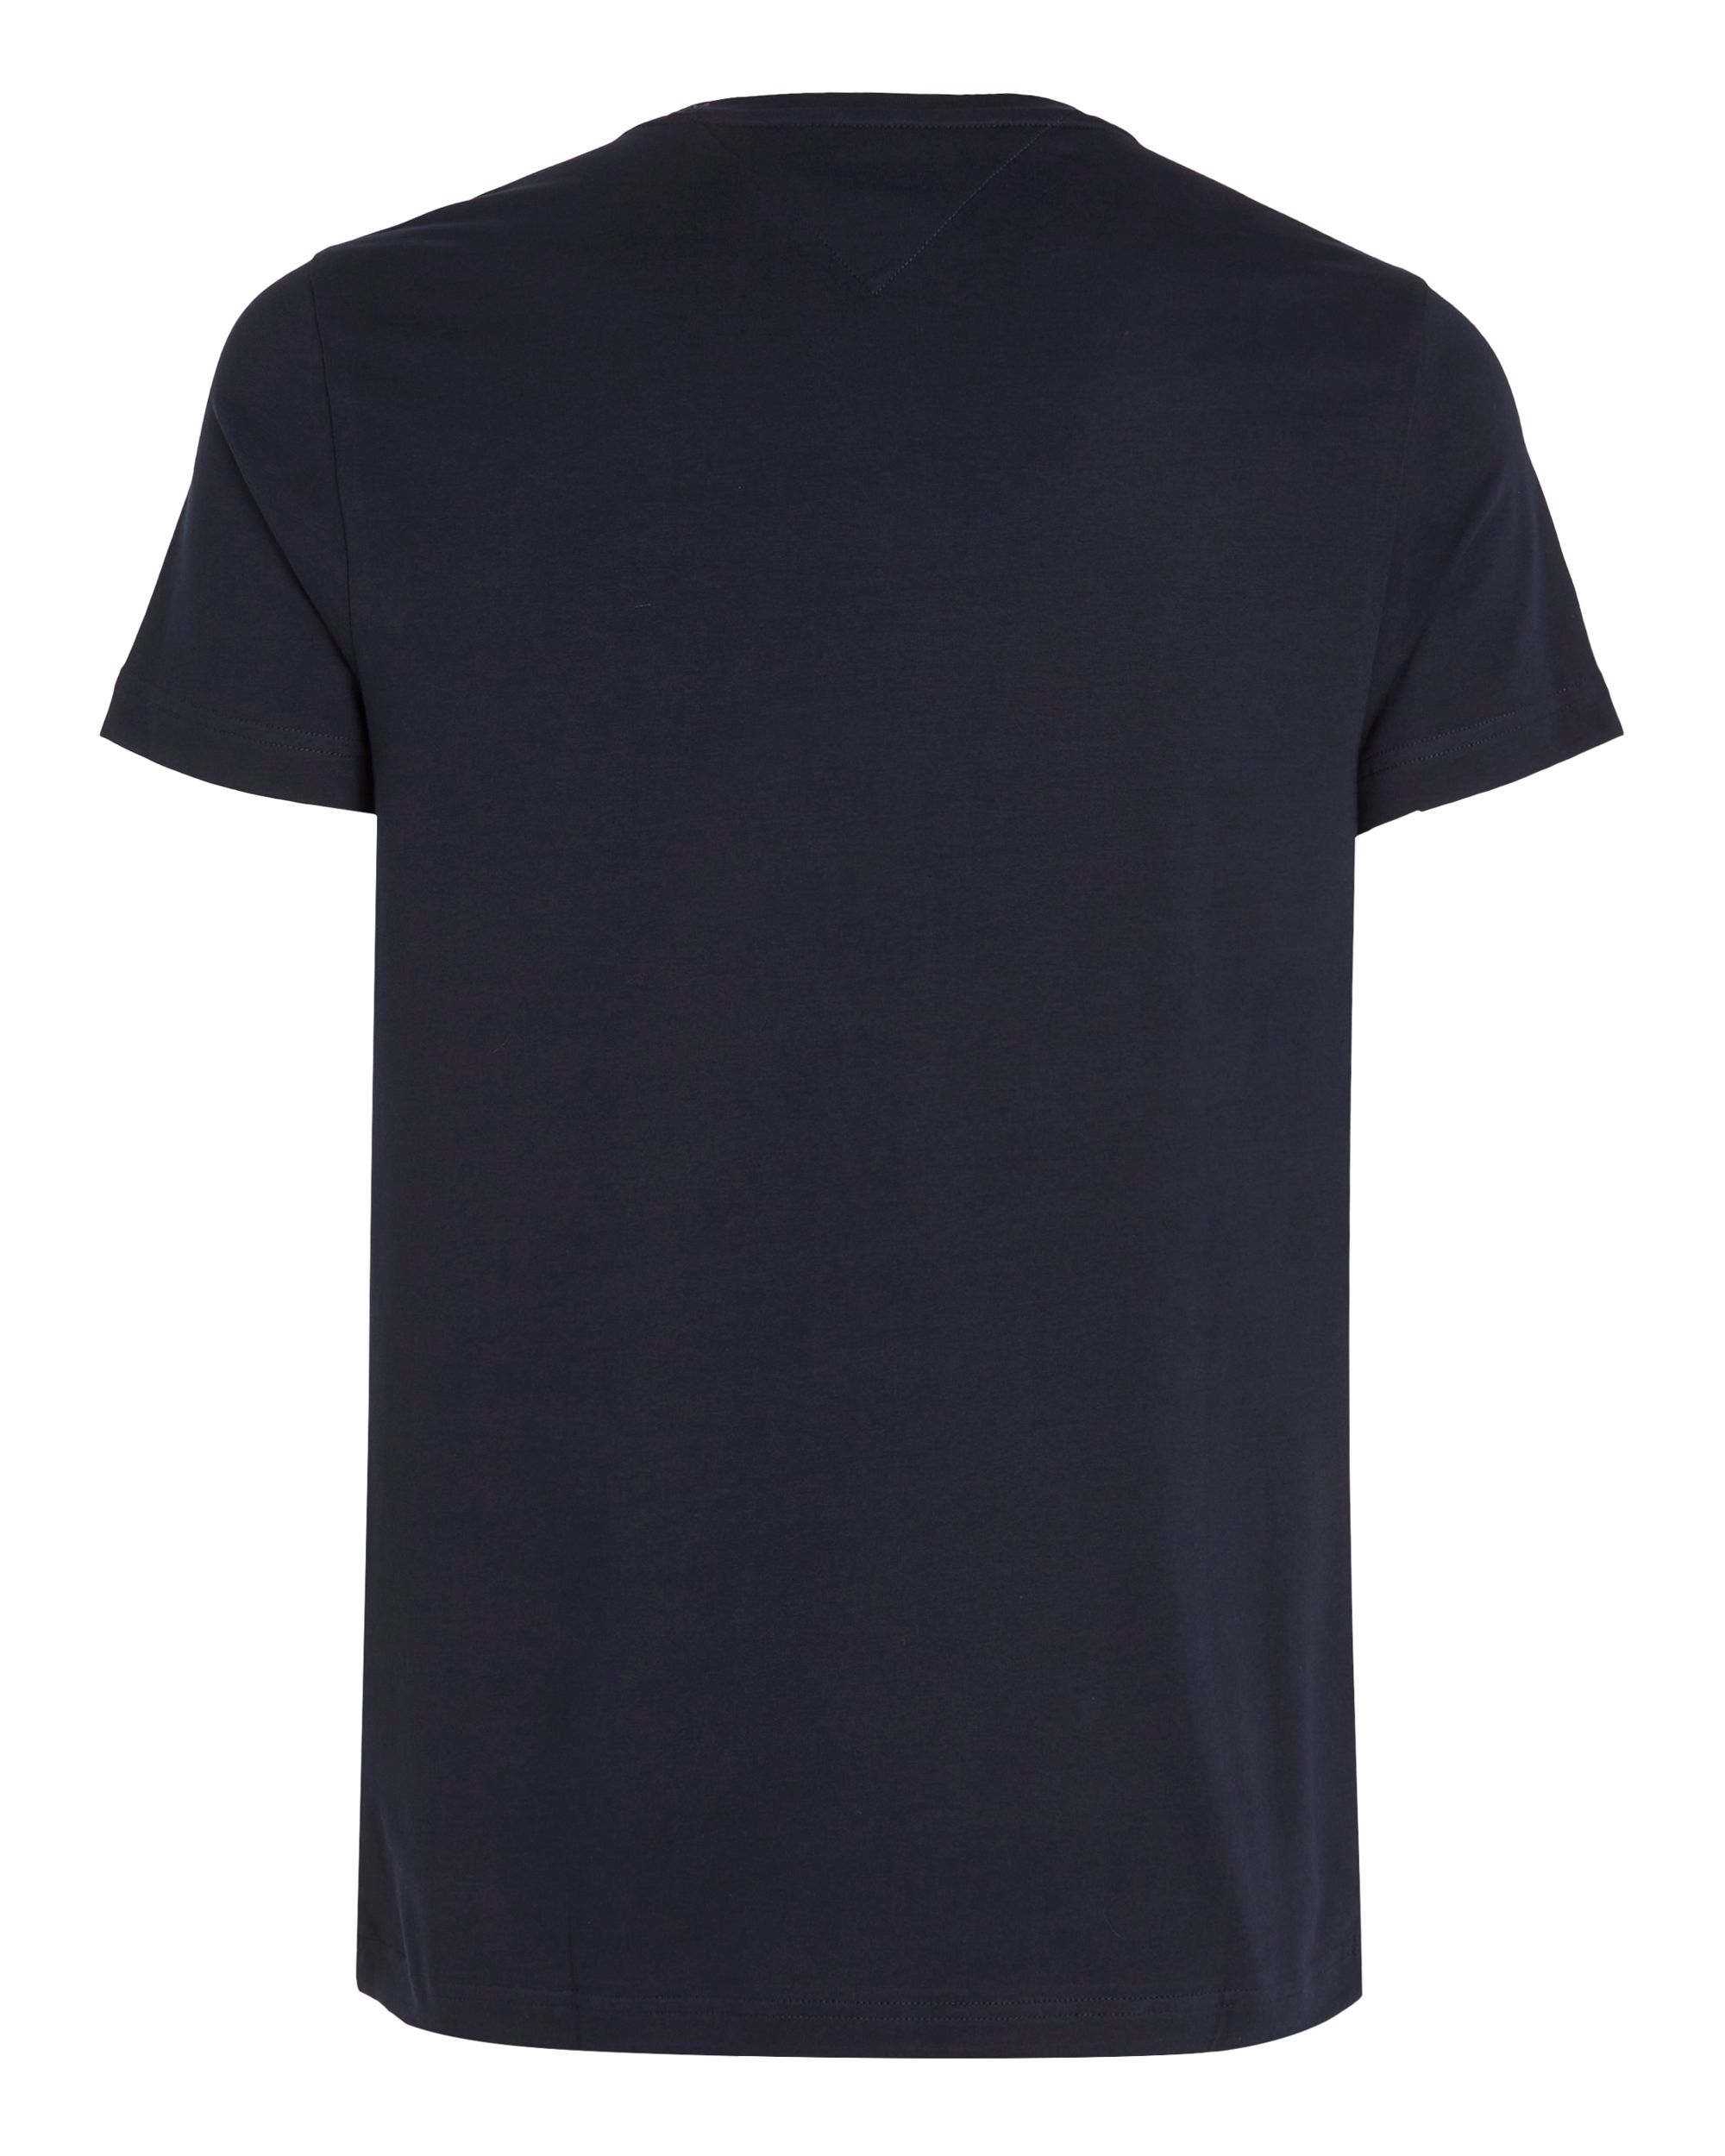 Tommy Hilfiger Menswear T-shirt KM Donker grijs 086993-001-L